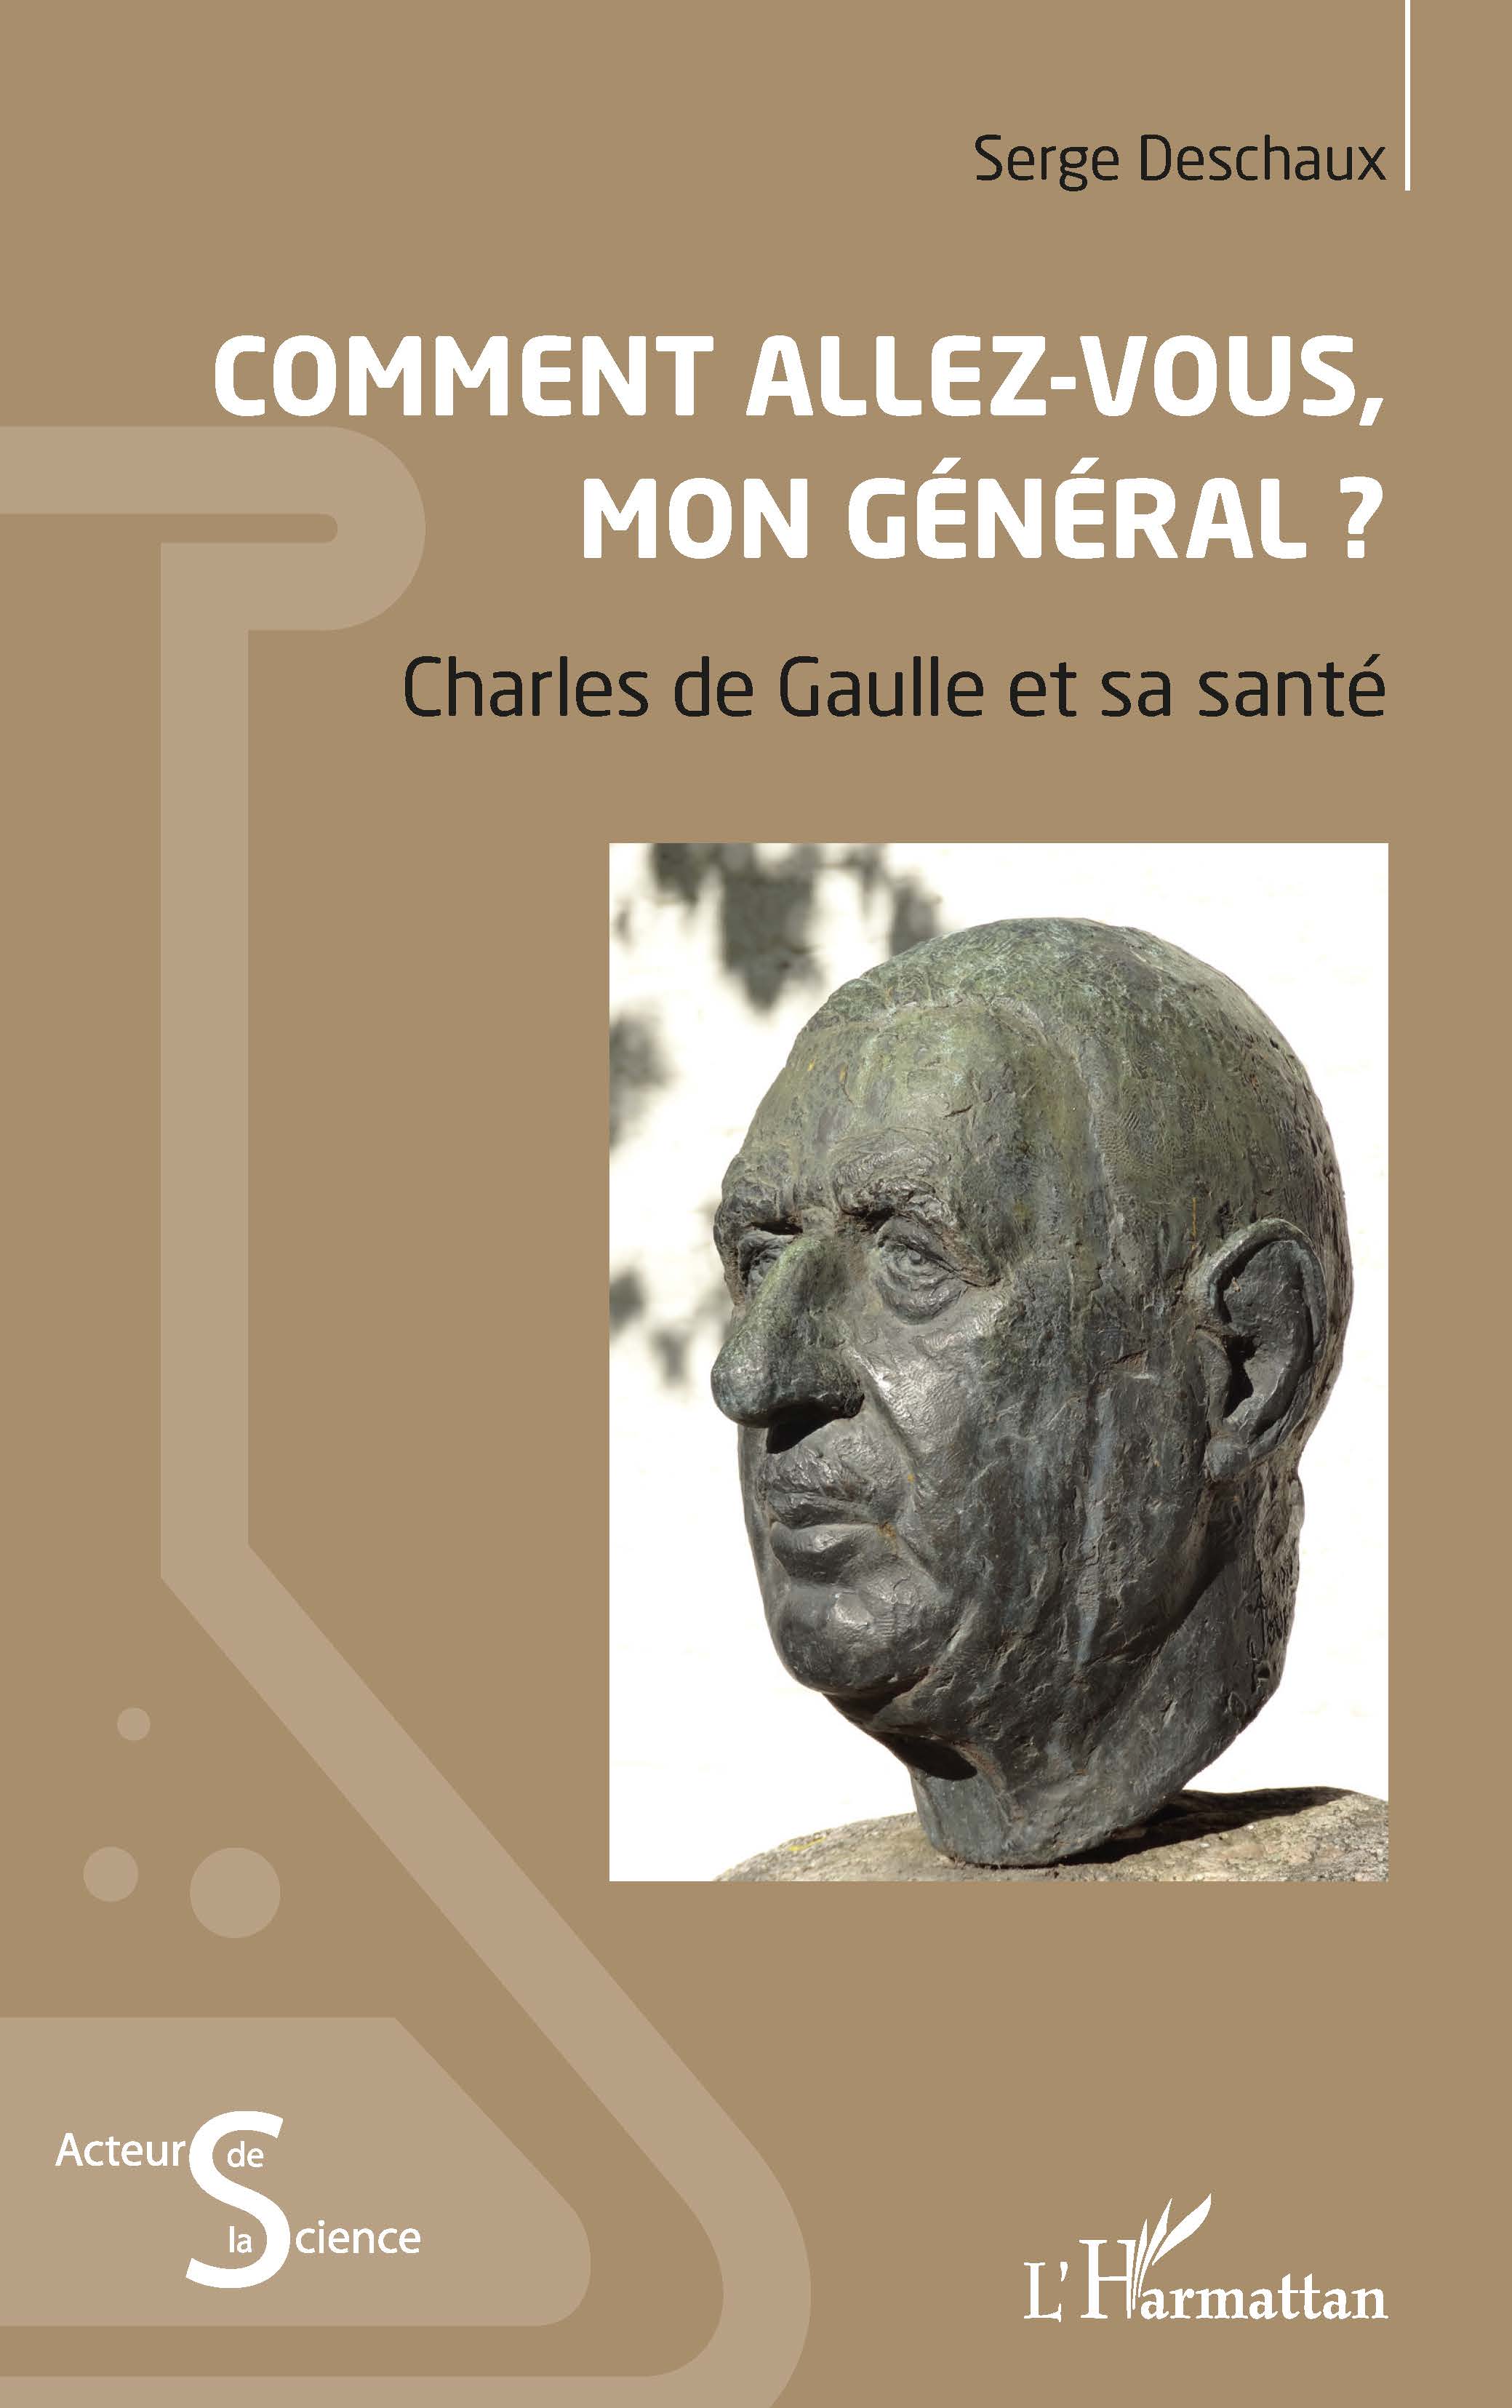 Comment allez vous mon Général_santé du général de Gaulle_ouvrage de Serge Deschaux